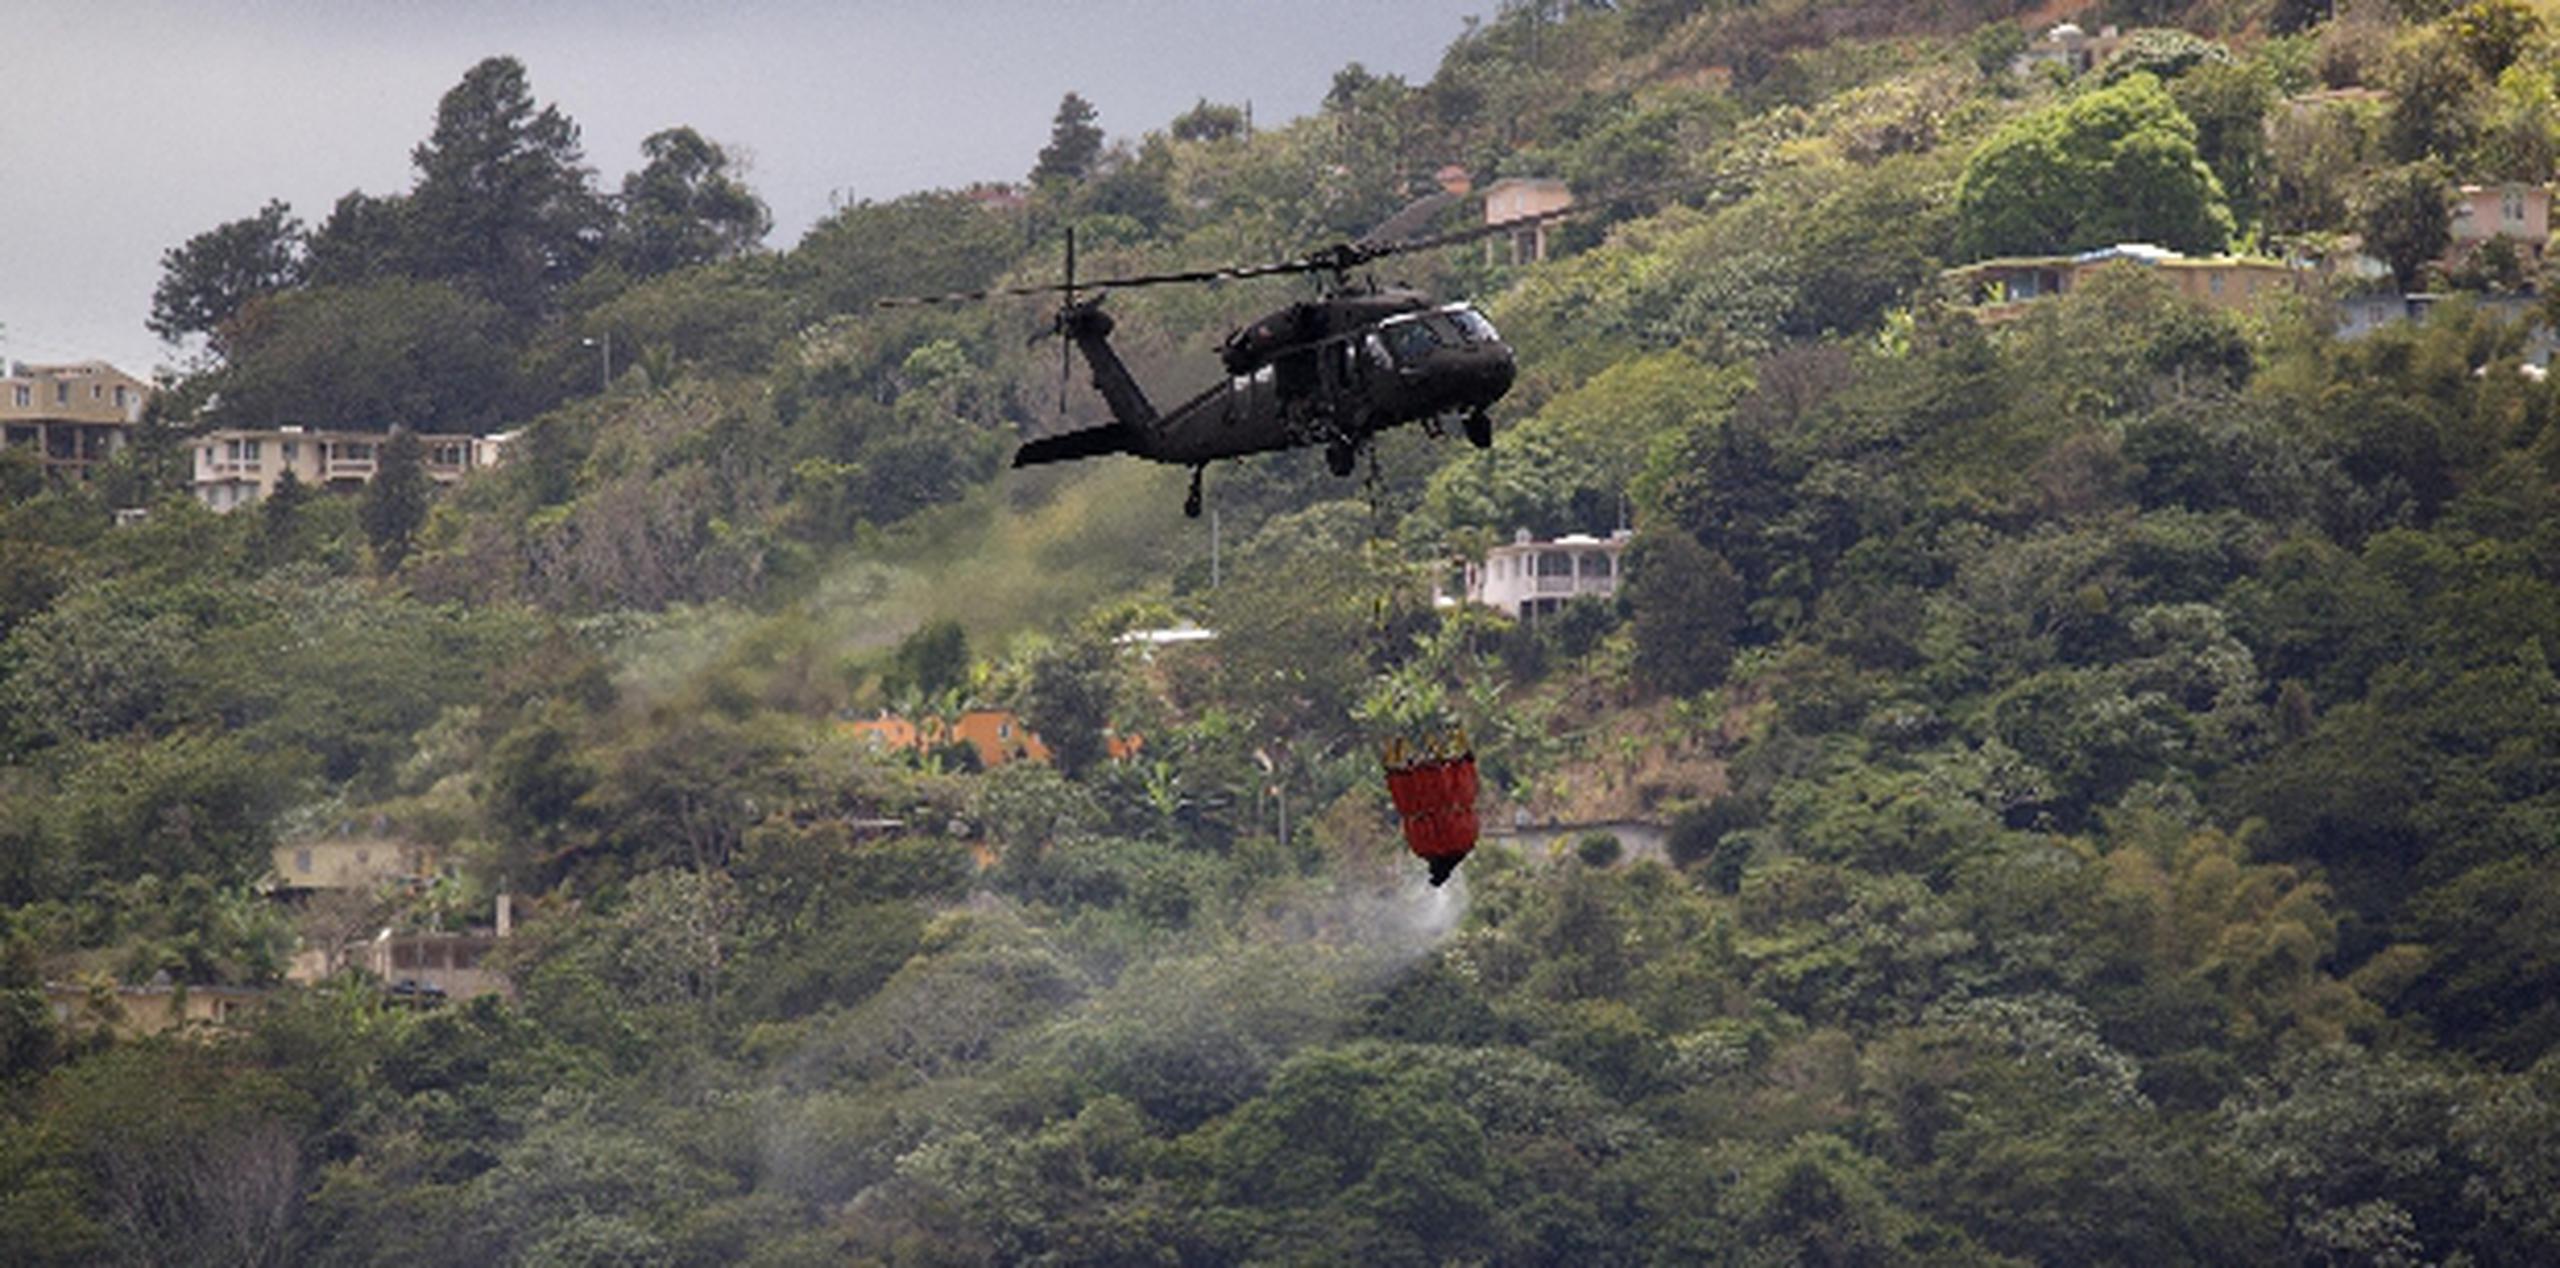 Un helicóptero sobrevoló el área para echar agua durante el proceso de control del incendio. (jorge.ramirez@gfrmedia.com)